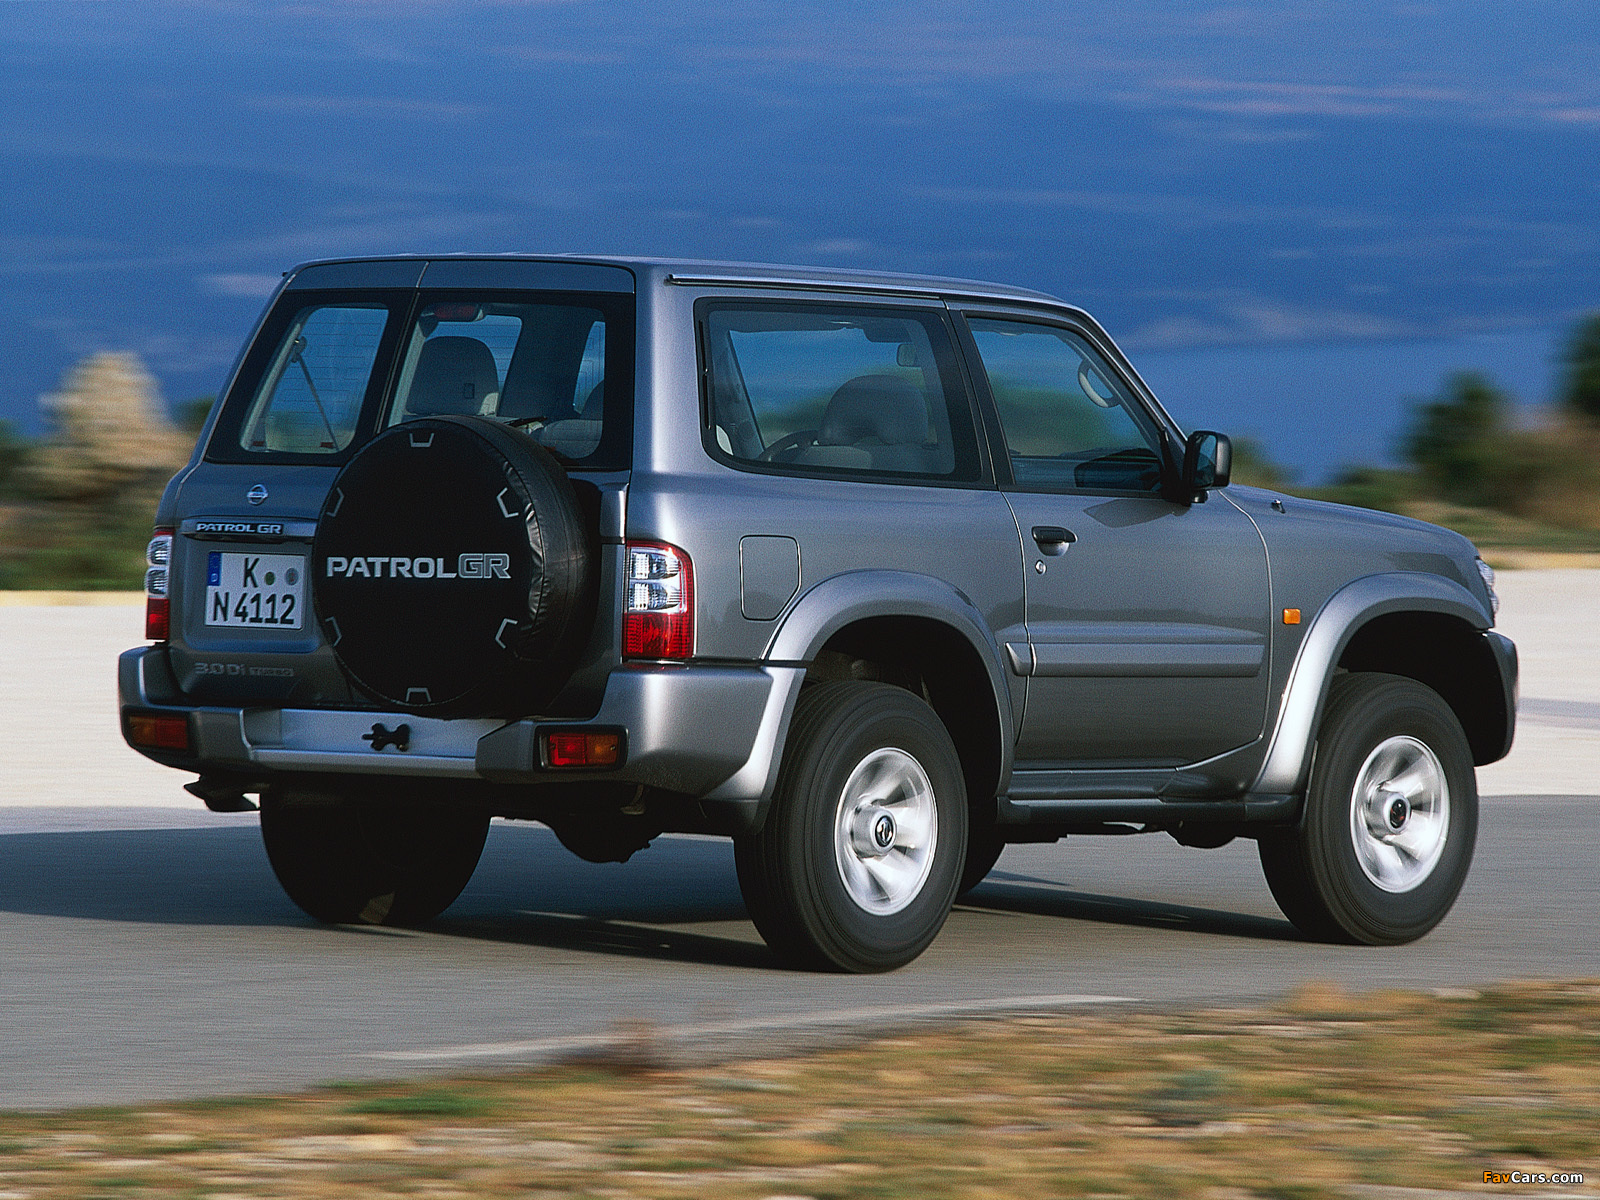 Nissan Patrol GR 3door (Y61) 200104 photos (1600x1200)